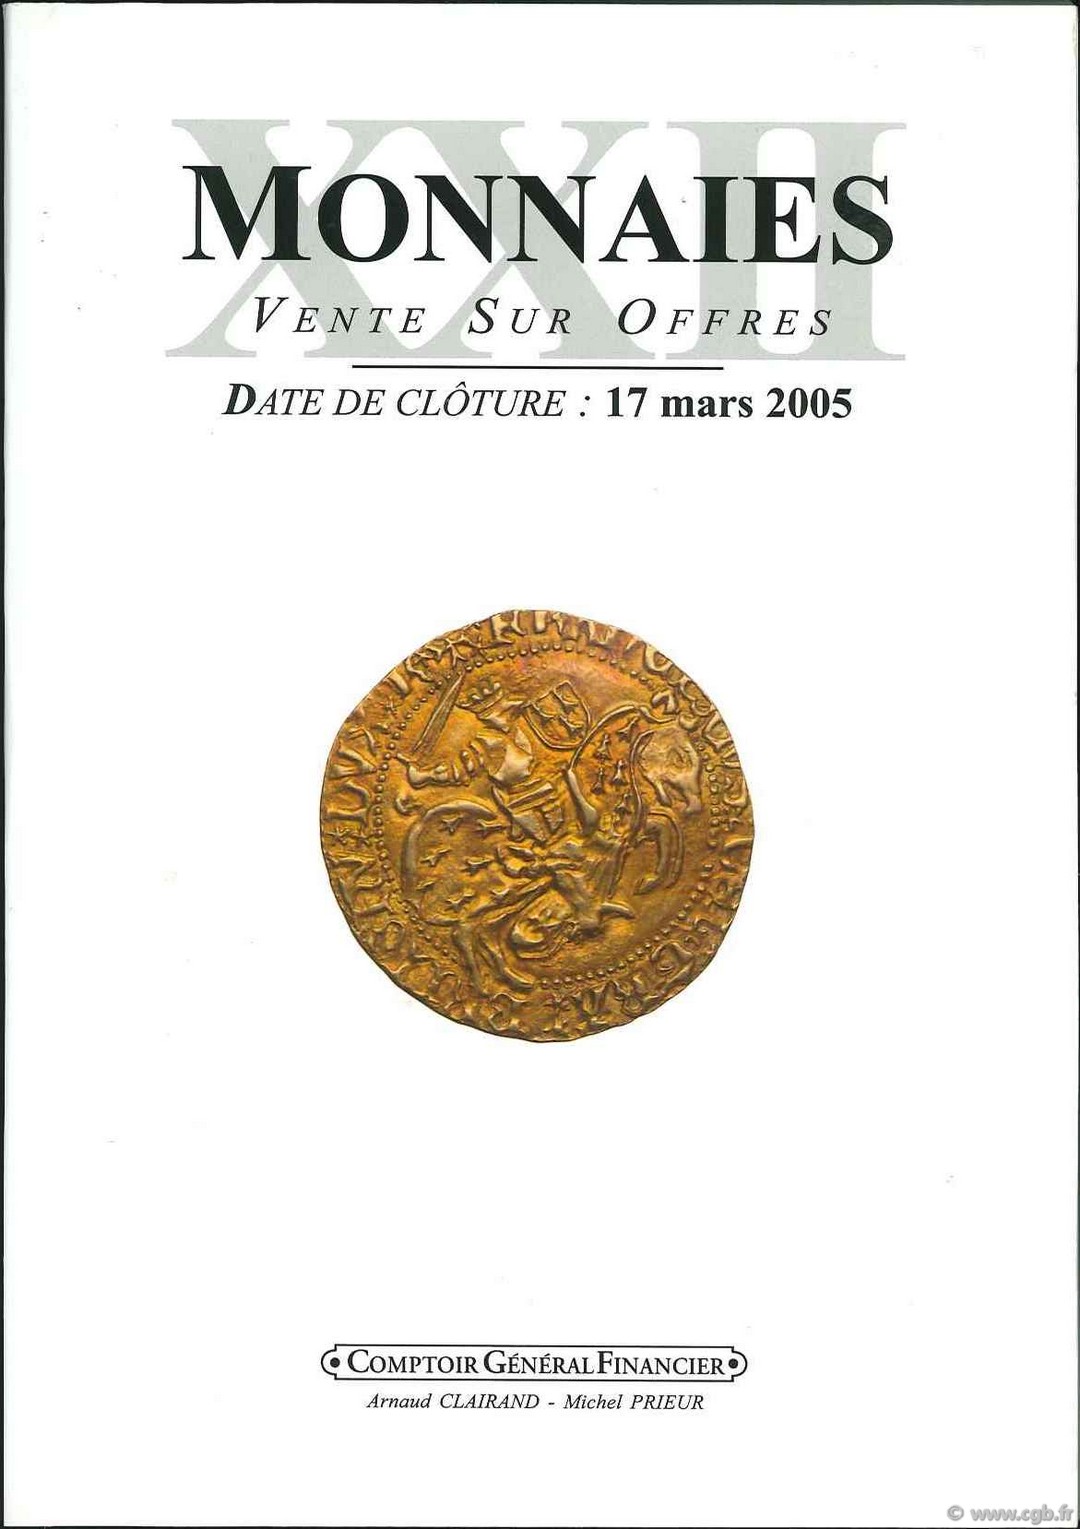 Monnaies XXII spécial Féodales CLAIRAND A., PRIEUR M.